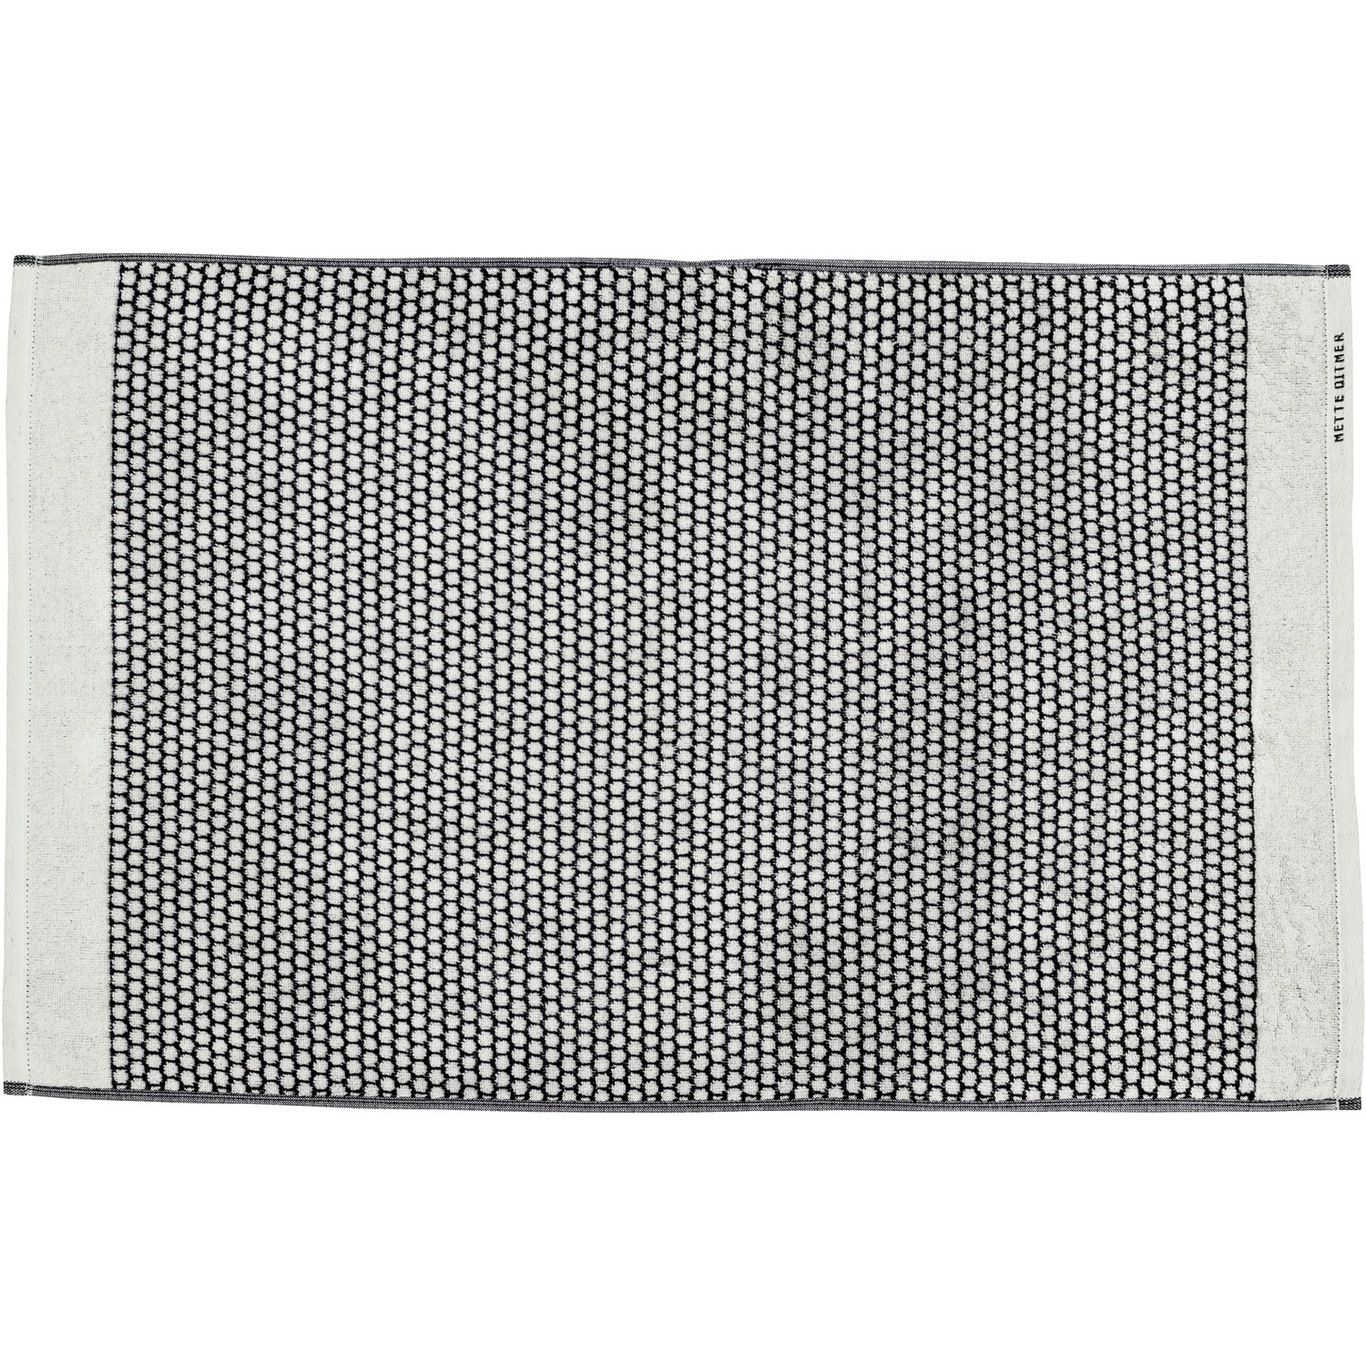 GRID Badematte 50x80 cm, Sort/Off-white